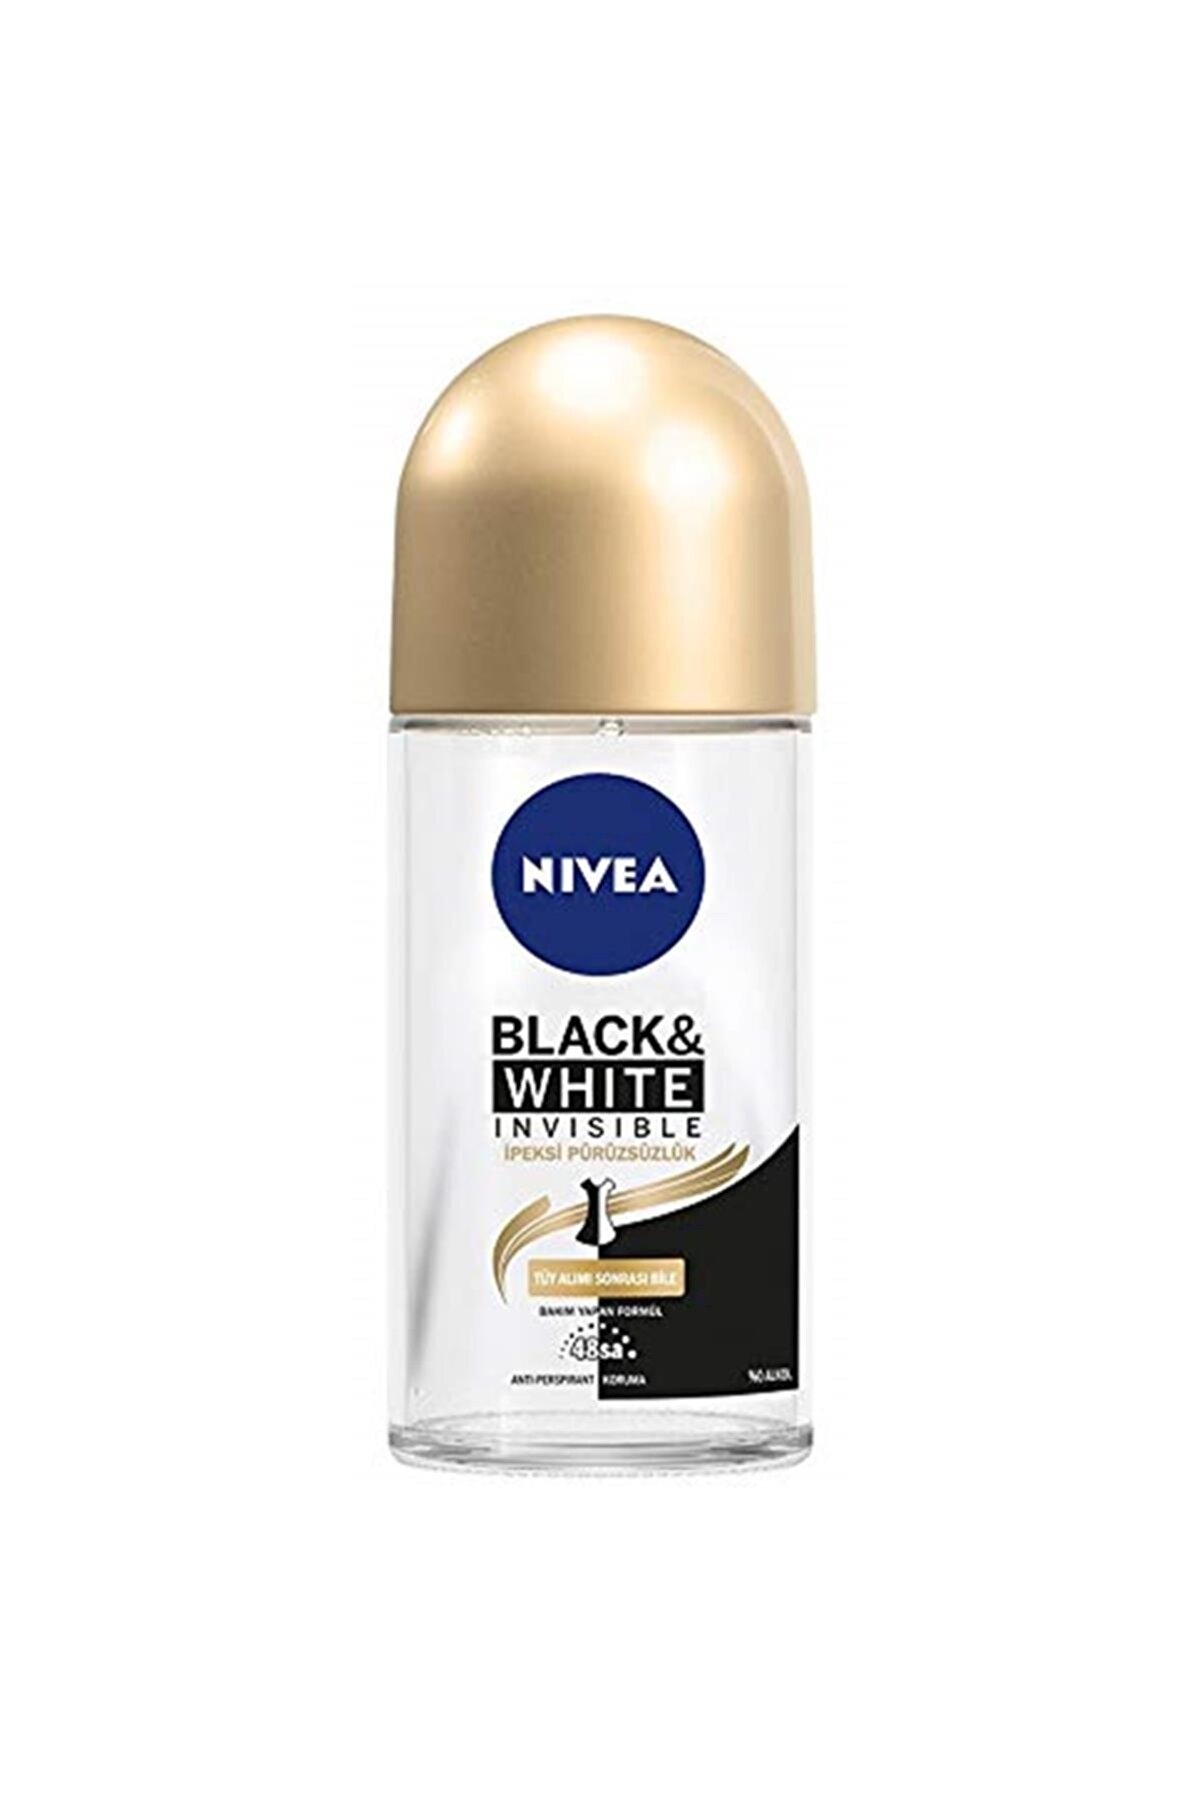 NIVEA Black & White Invisible - Ipeksi Pürüzsüzlük Roll On Deodorant 50 ml